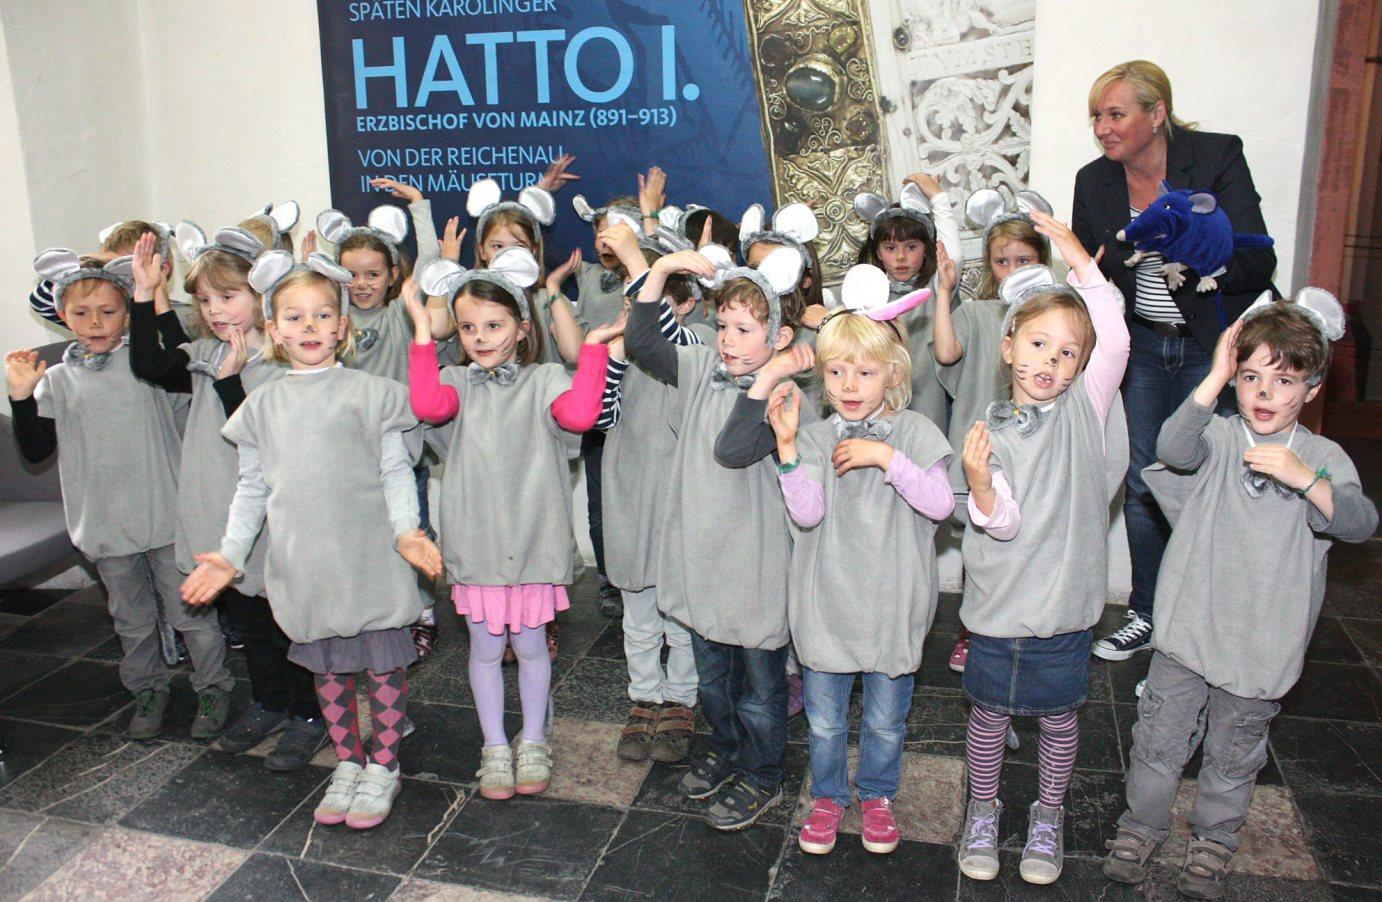 Mainz, 15. Mai 2013: Kinder sind in der Hatto-Ausstellung herzlich willkommen: Die „Maxis“ aus dem katholischen Kindergarten in Bodenheim waren in Mäusekostümen in der Ausstellung unterwegs und hatten den anwesenden Journalisten zum Auftakt ihr Mäuselied präsentiert.